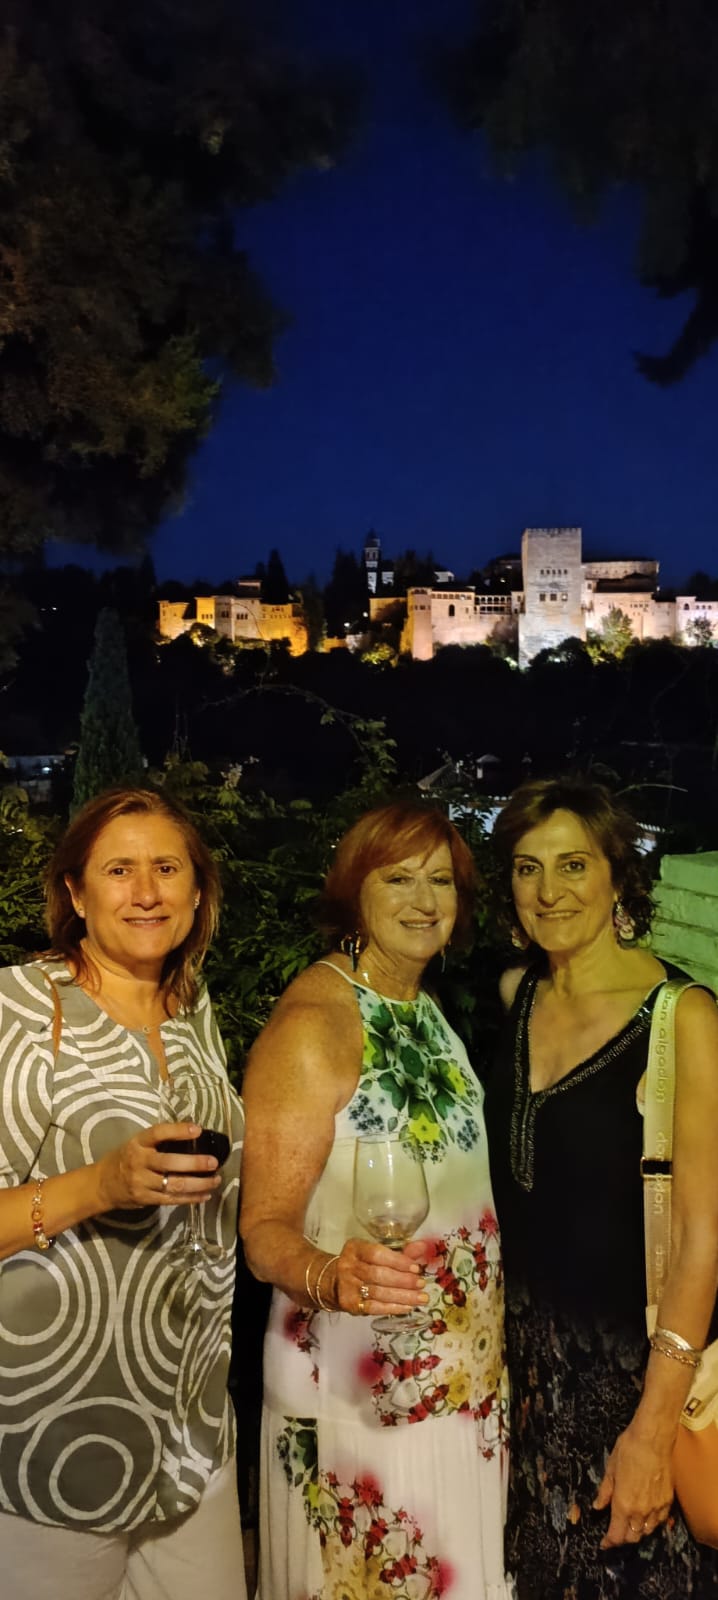 Cena con vistas a la Alhambra